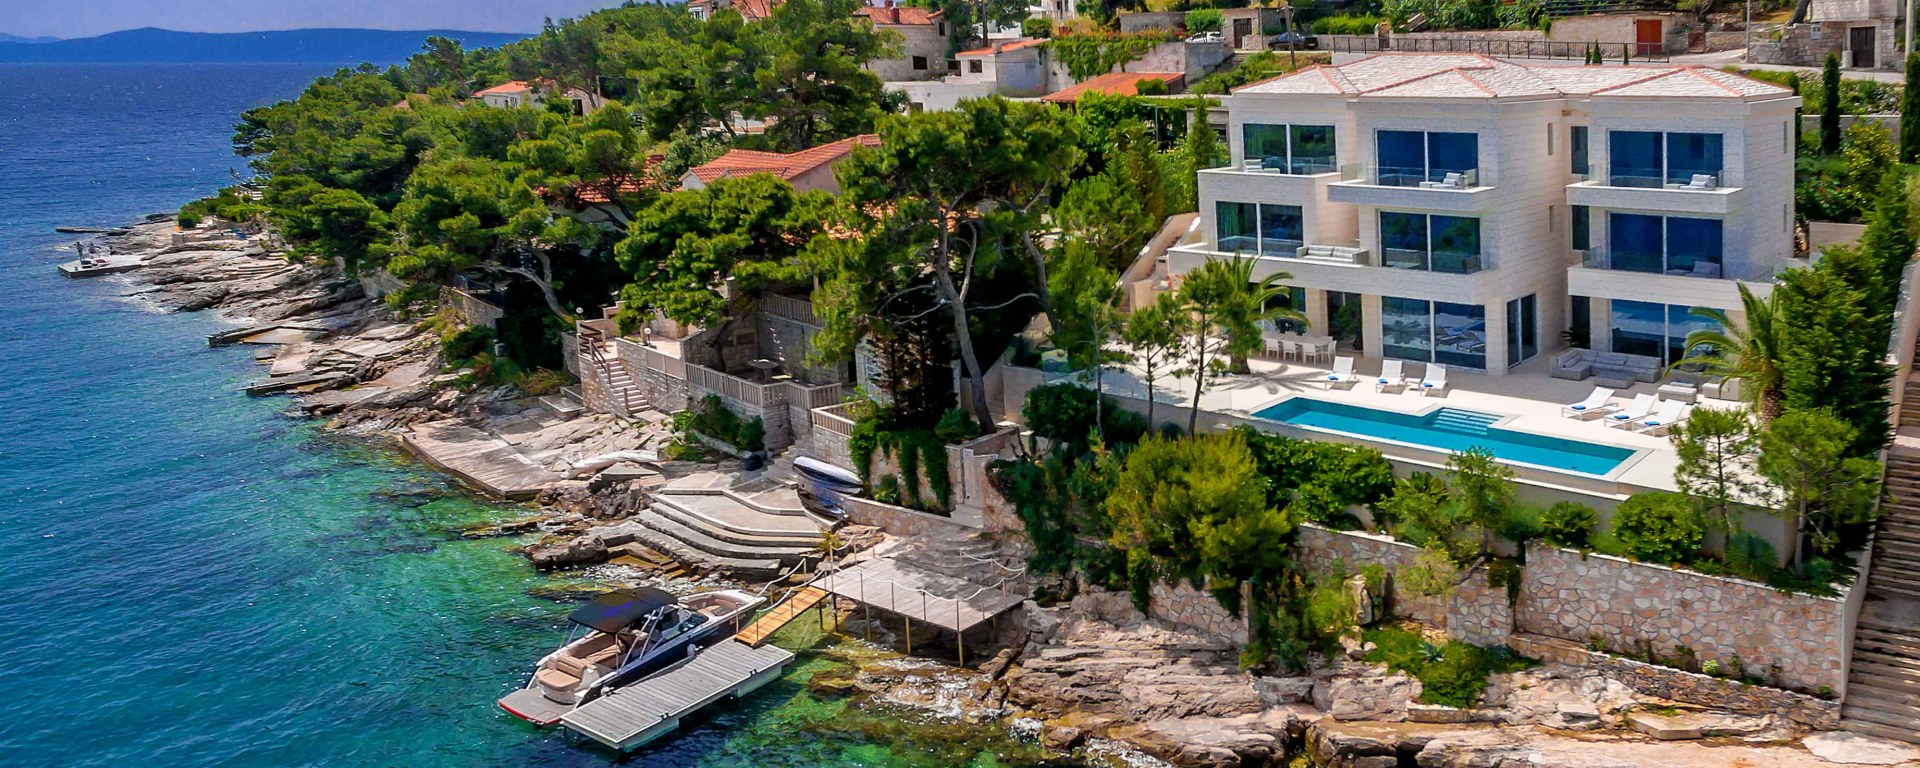 Kroatien Luxus Ferienhaus Mieten